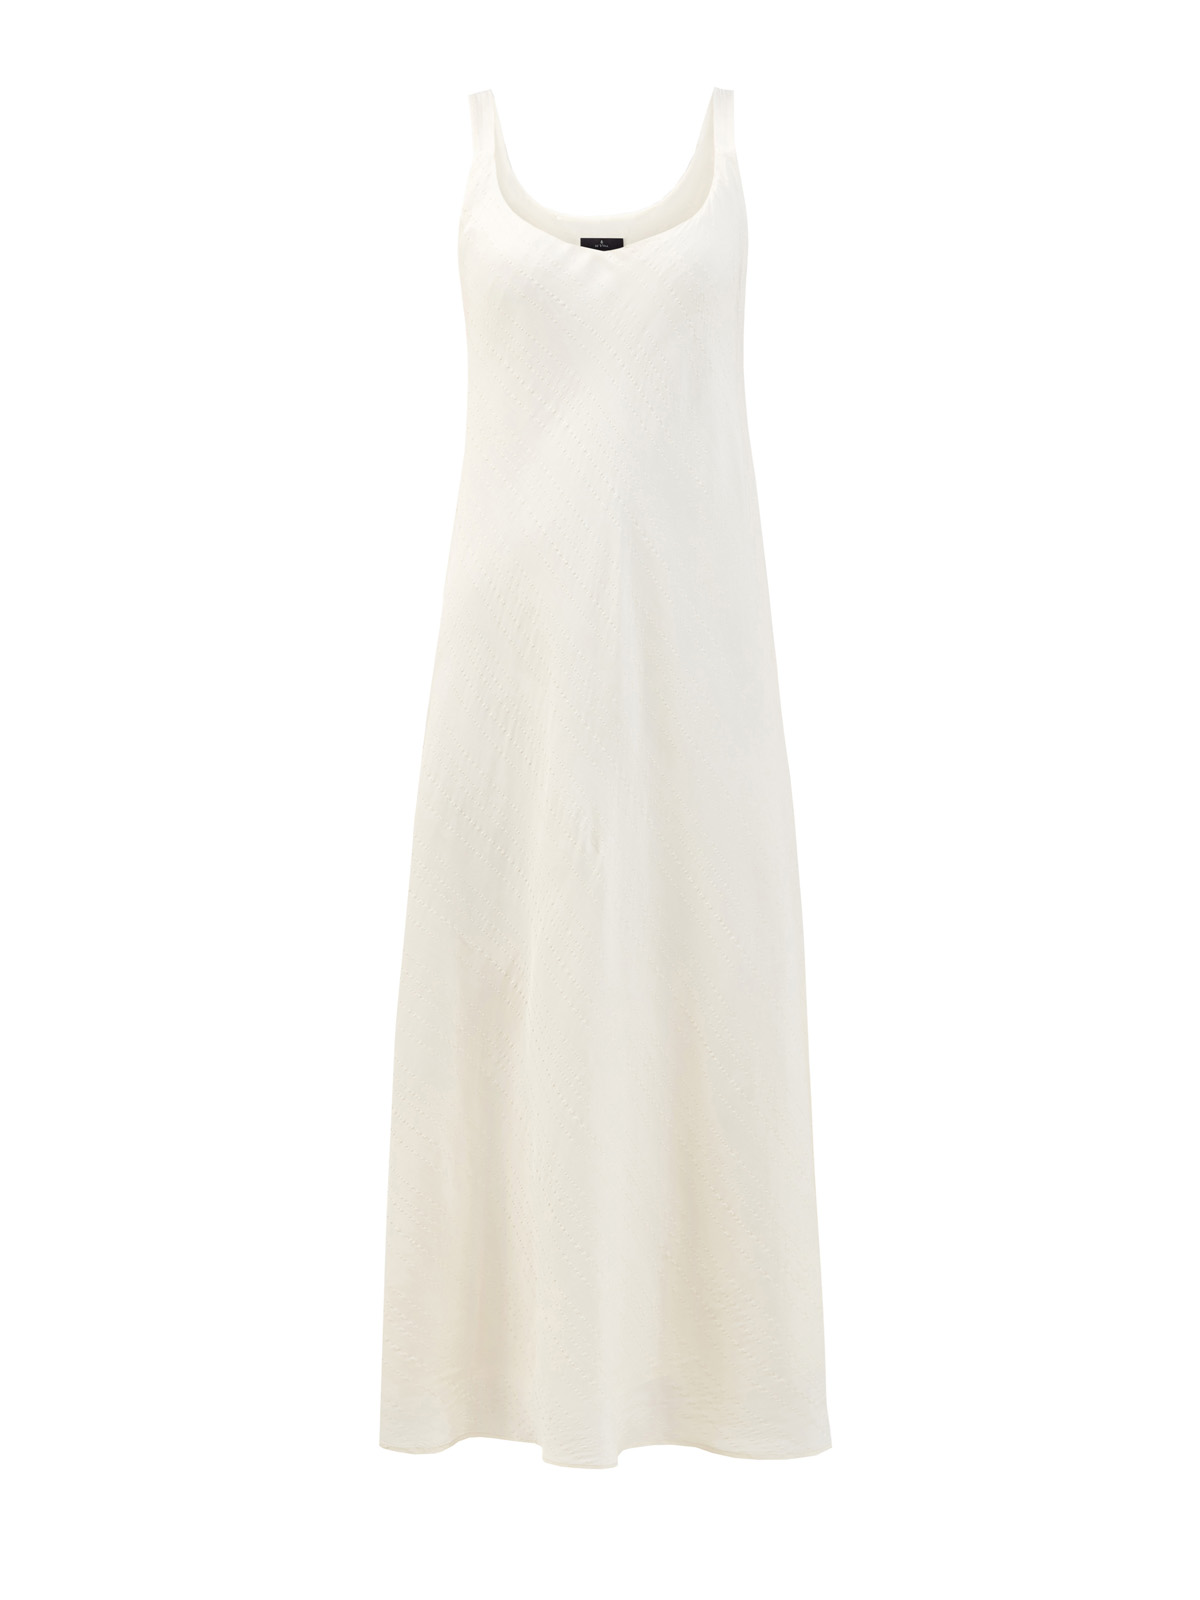 Легкое платье из вискозы и льна с декоративной прострочкой RE VERA, цвет белый, размер M;L;S - фото 1